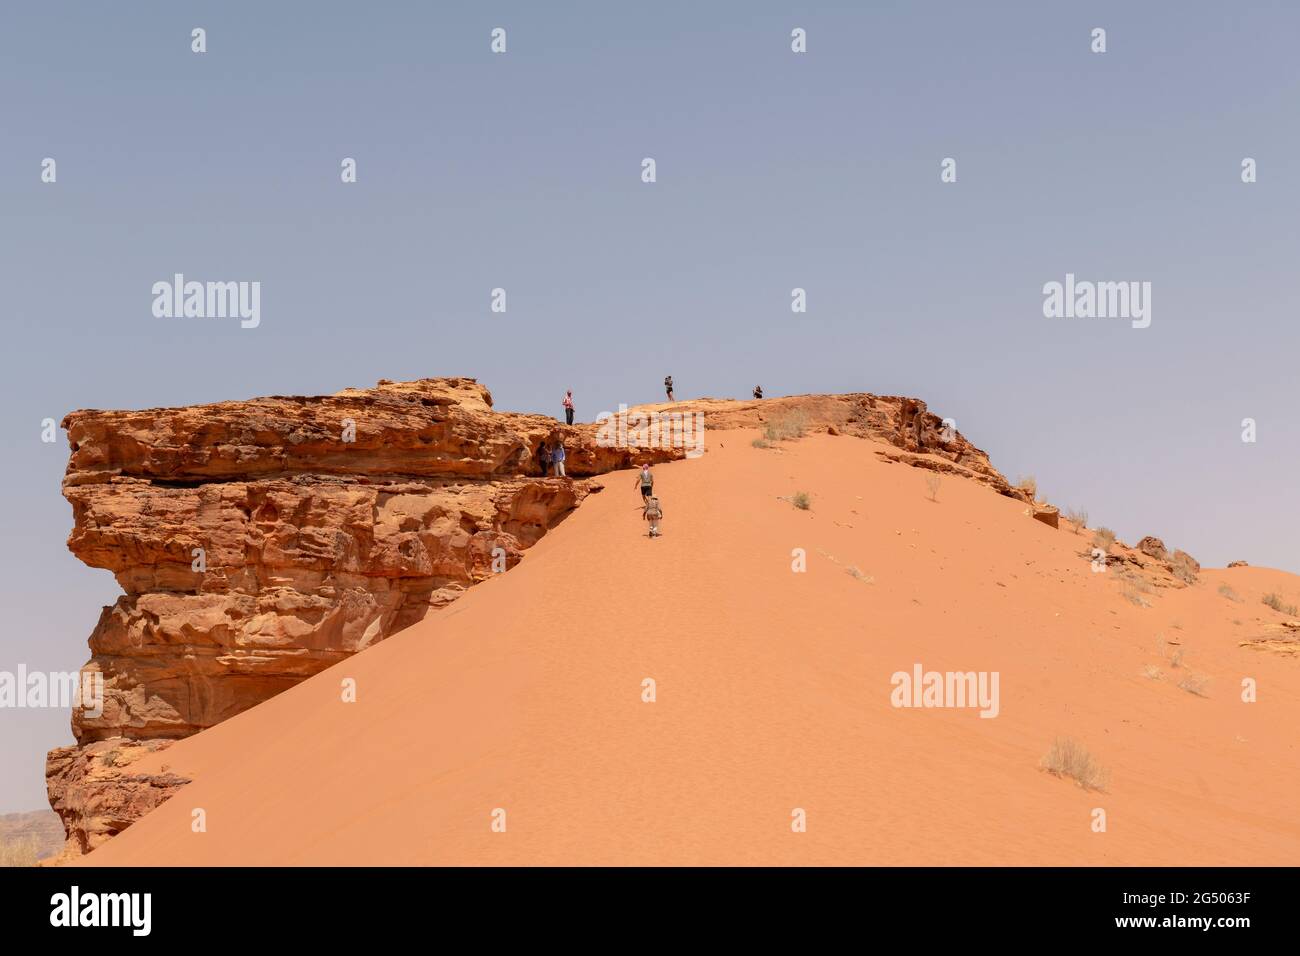 Touristes explorant la zone protégée de Wadi Rum. Wadi Rum ou Vallée de la Lune est célèbre pour son paysage désertique, ses vallées désertiques et ses dunes. Banque D'Images